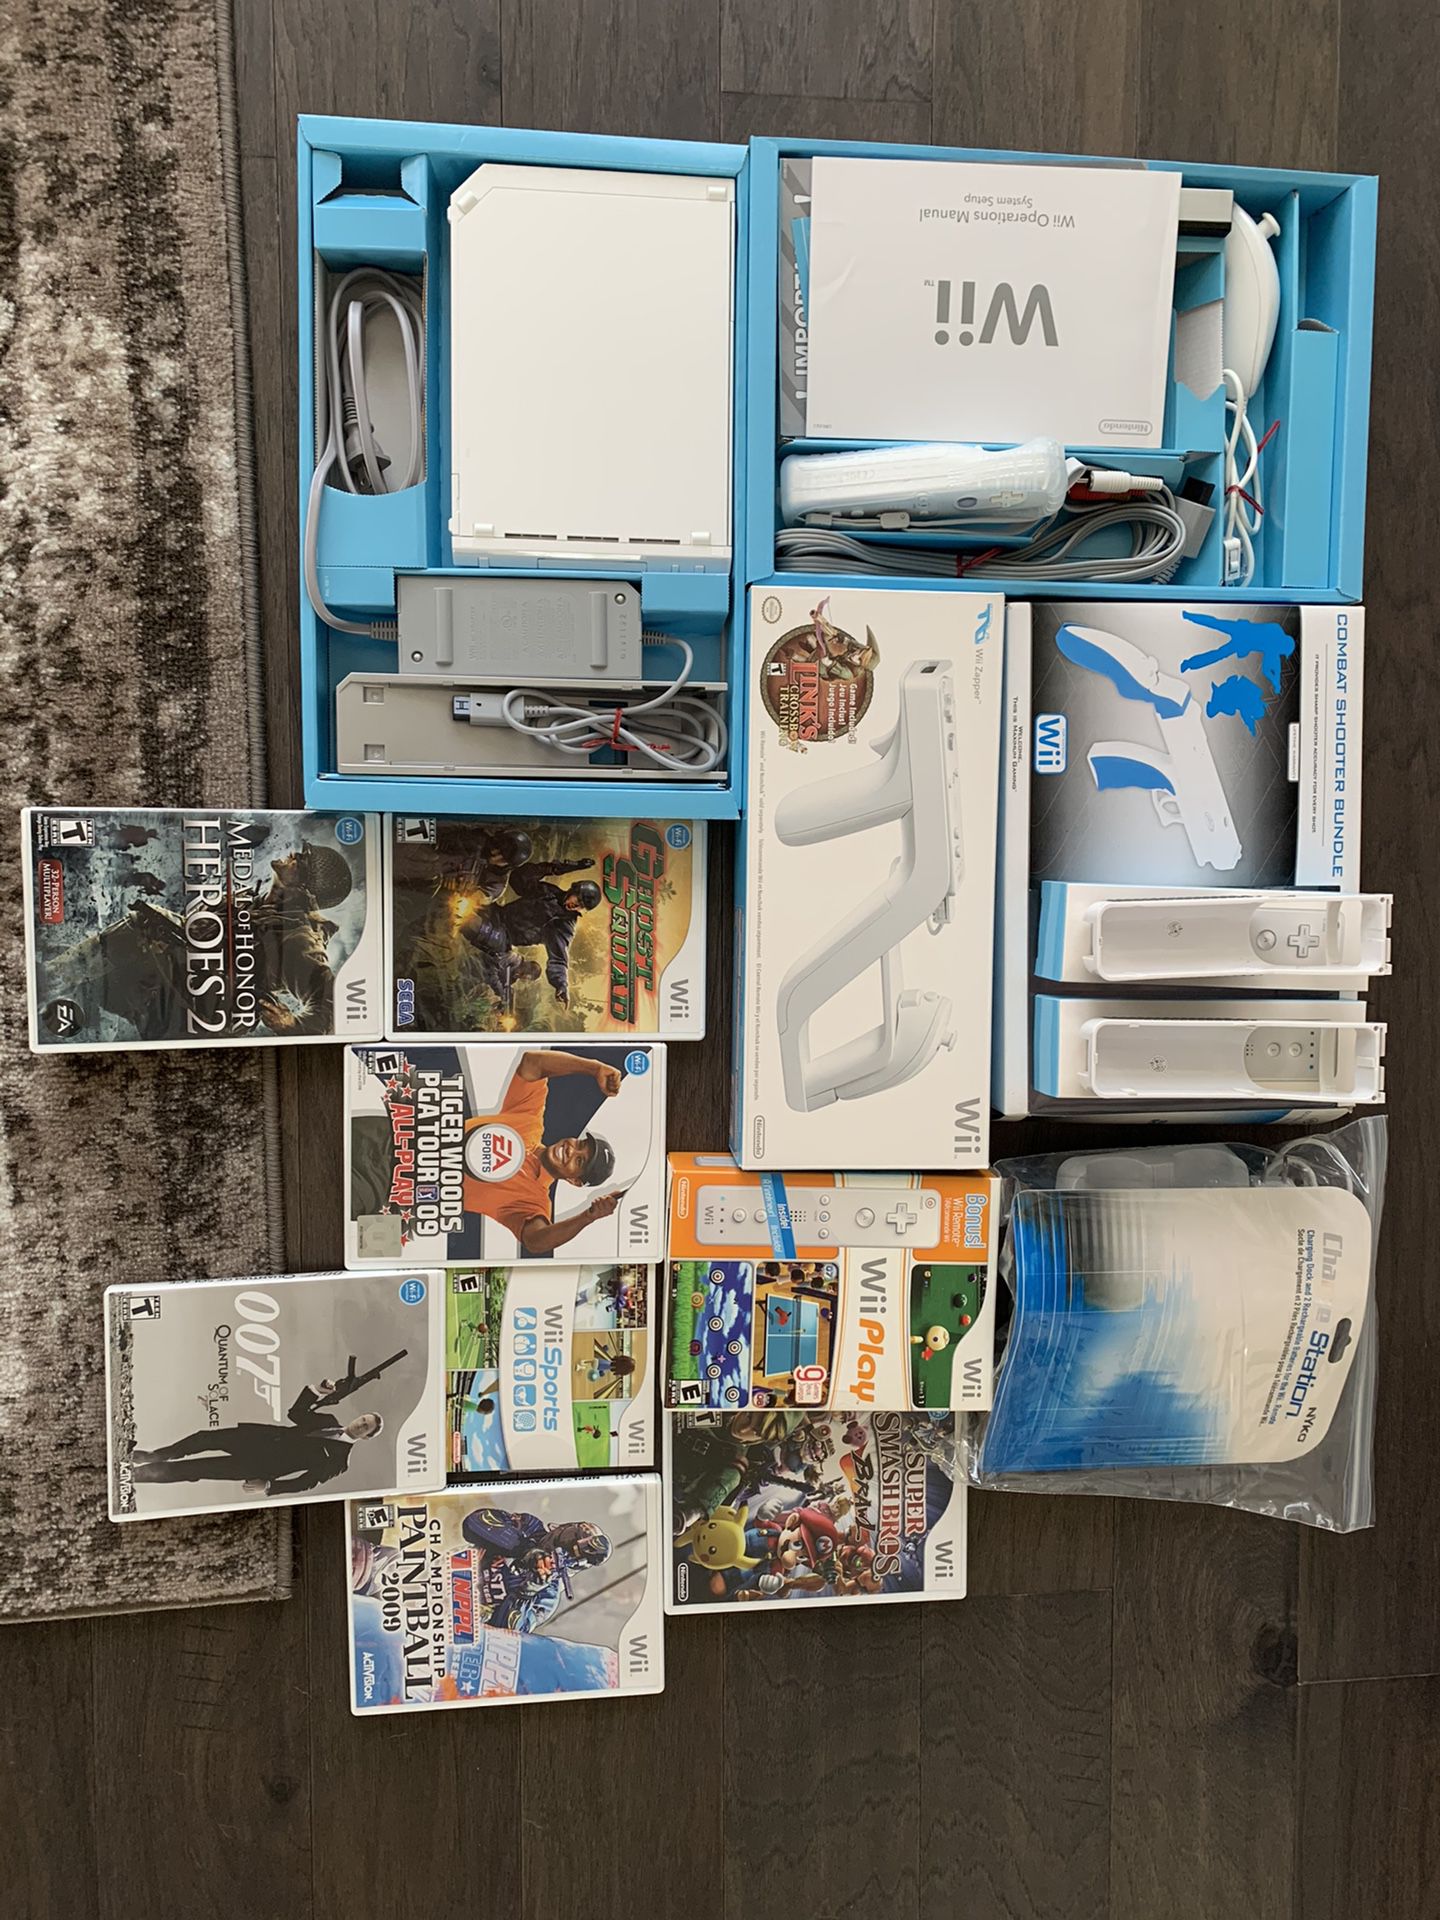 Nintendo Wii bundle pack